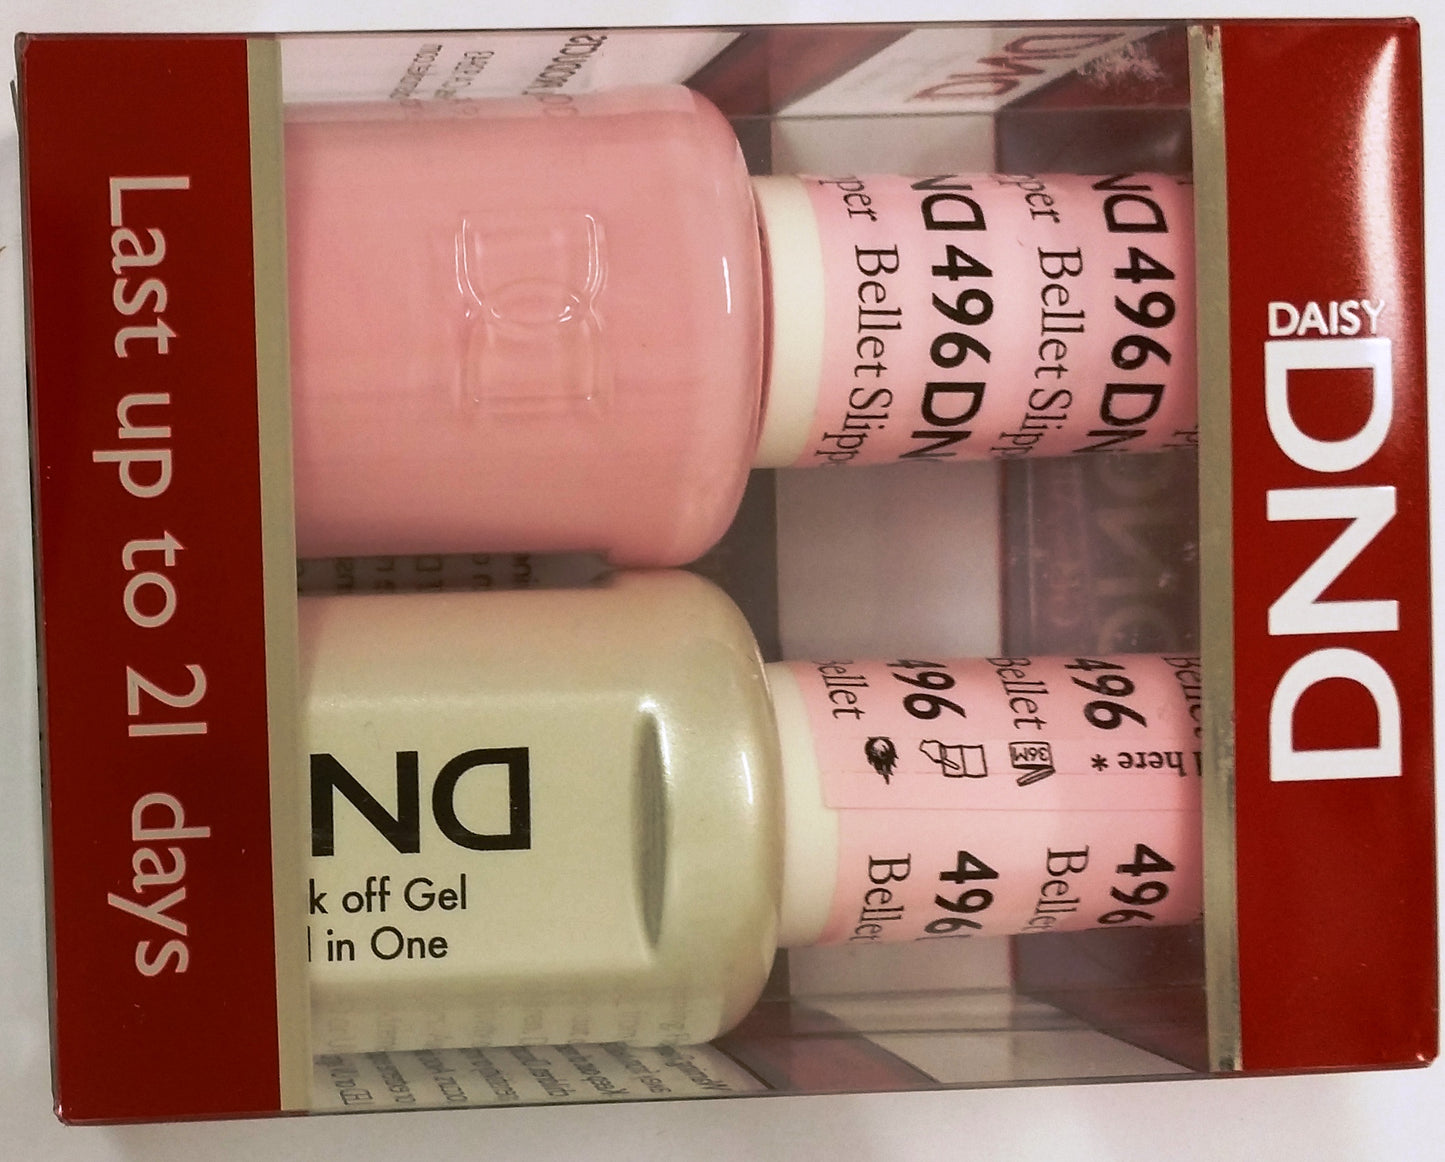 DND Duo GEL + SET de esmalte de uñas a juego (461-521) - Elige tus colores 